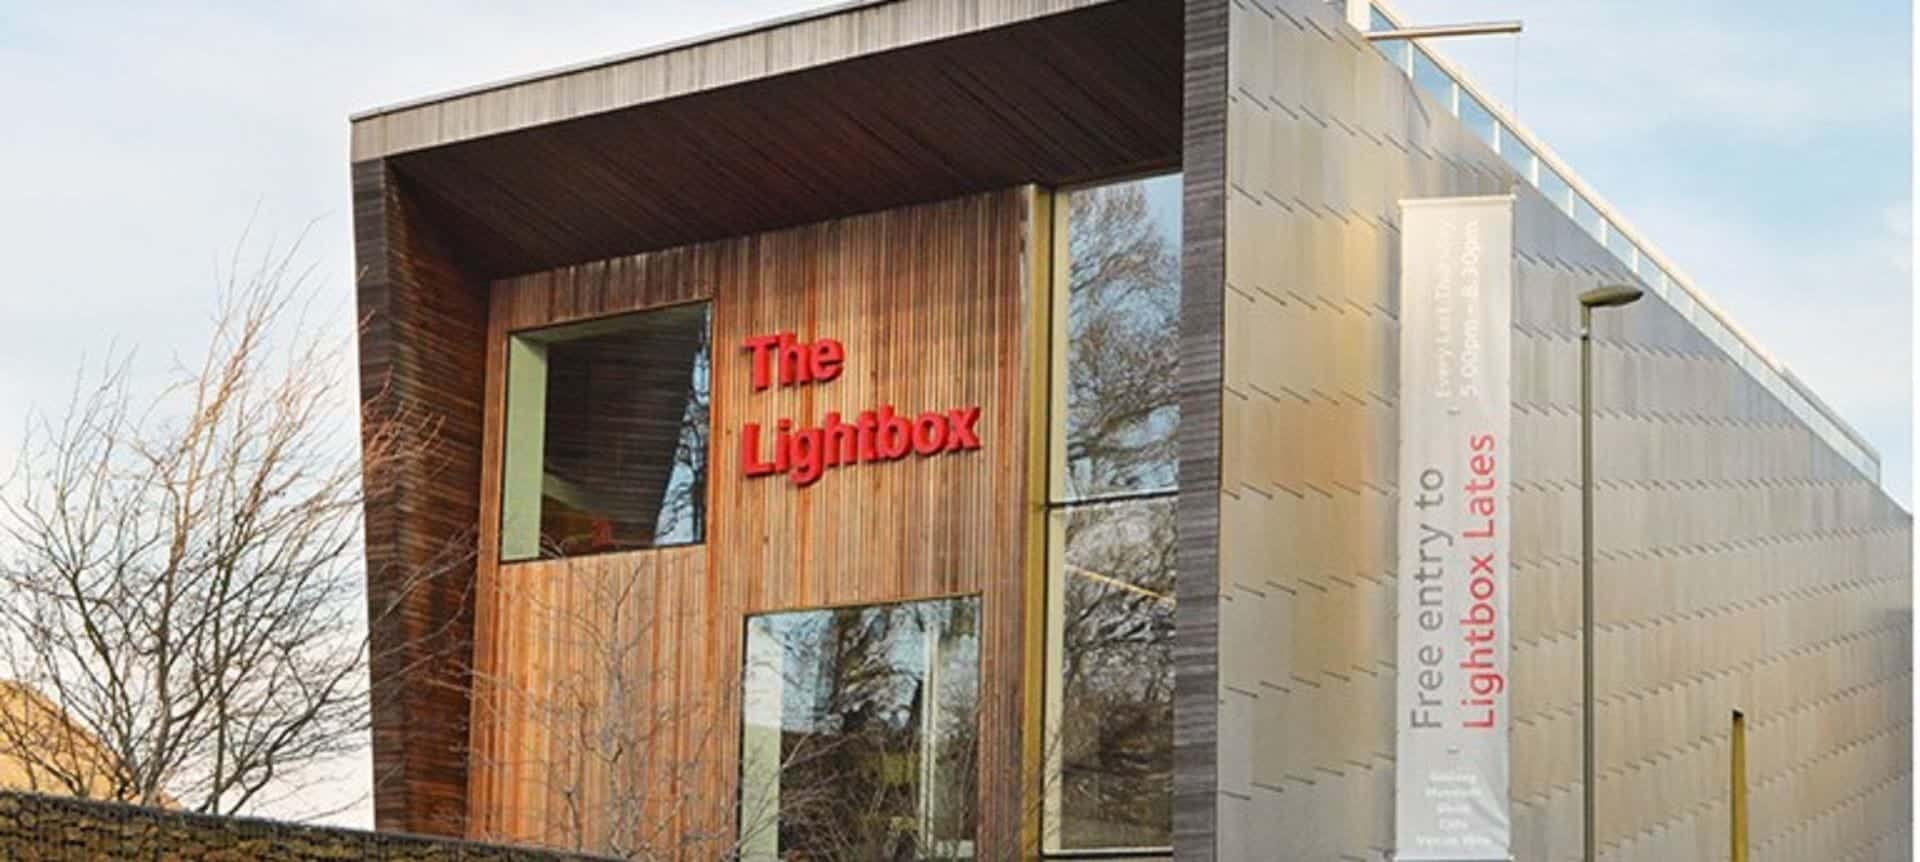 The Lightbox in UK